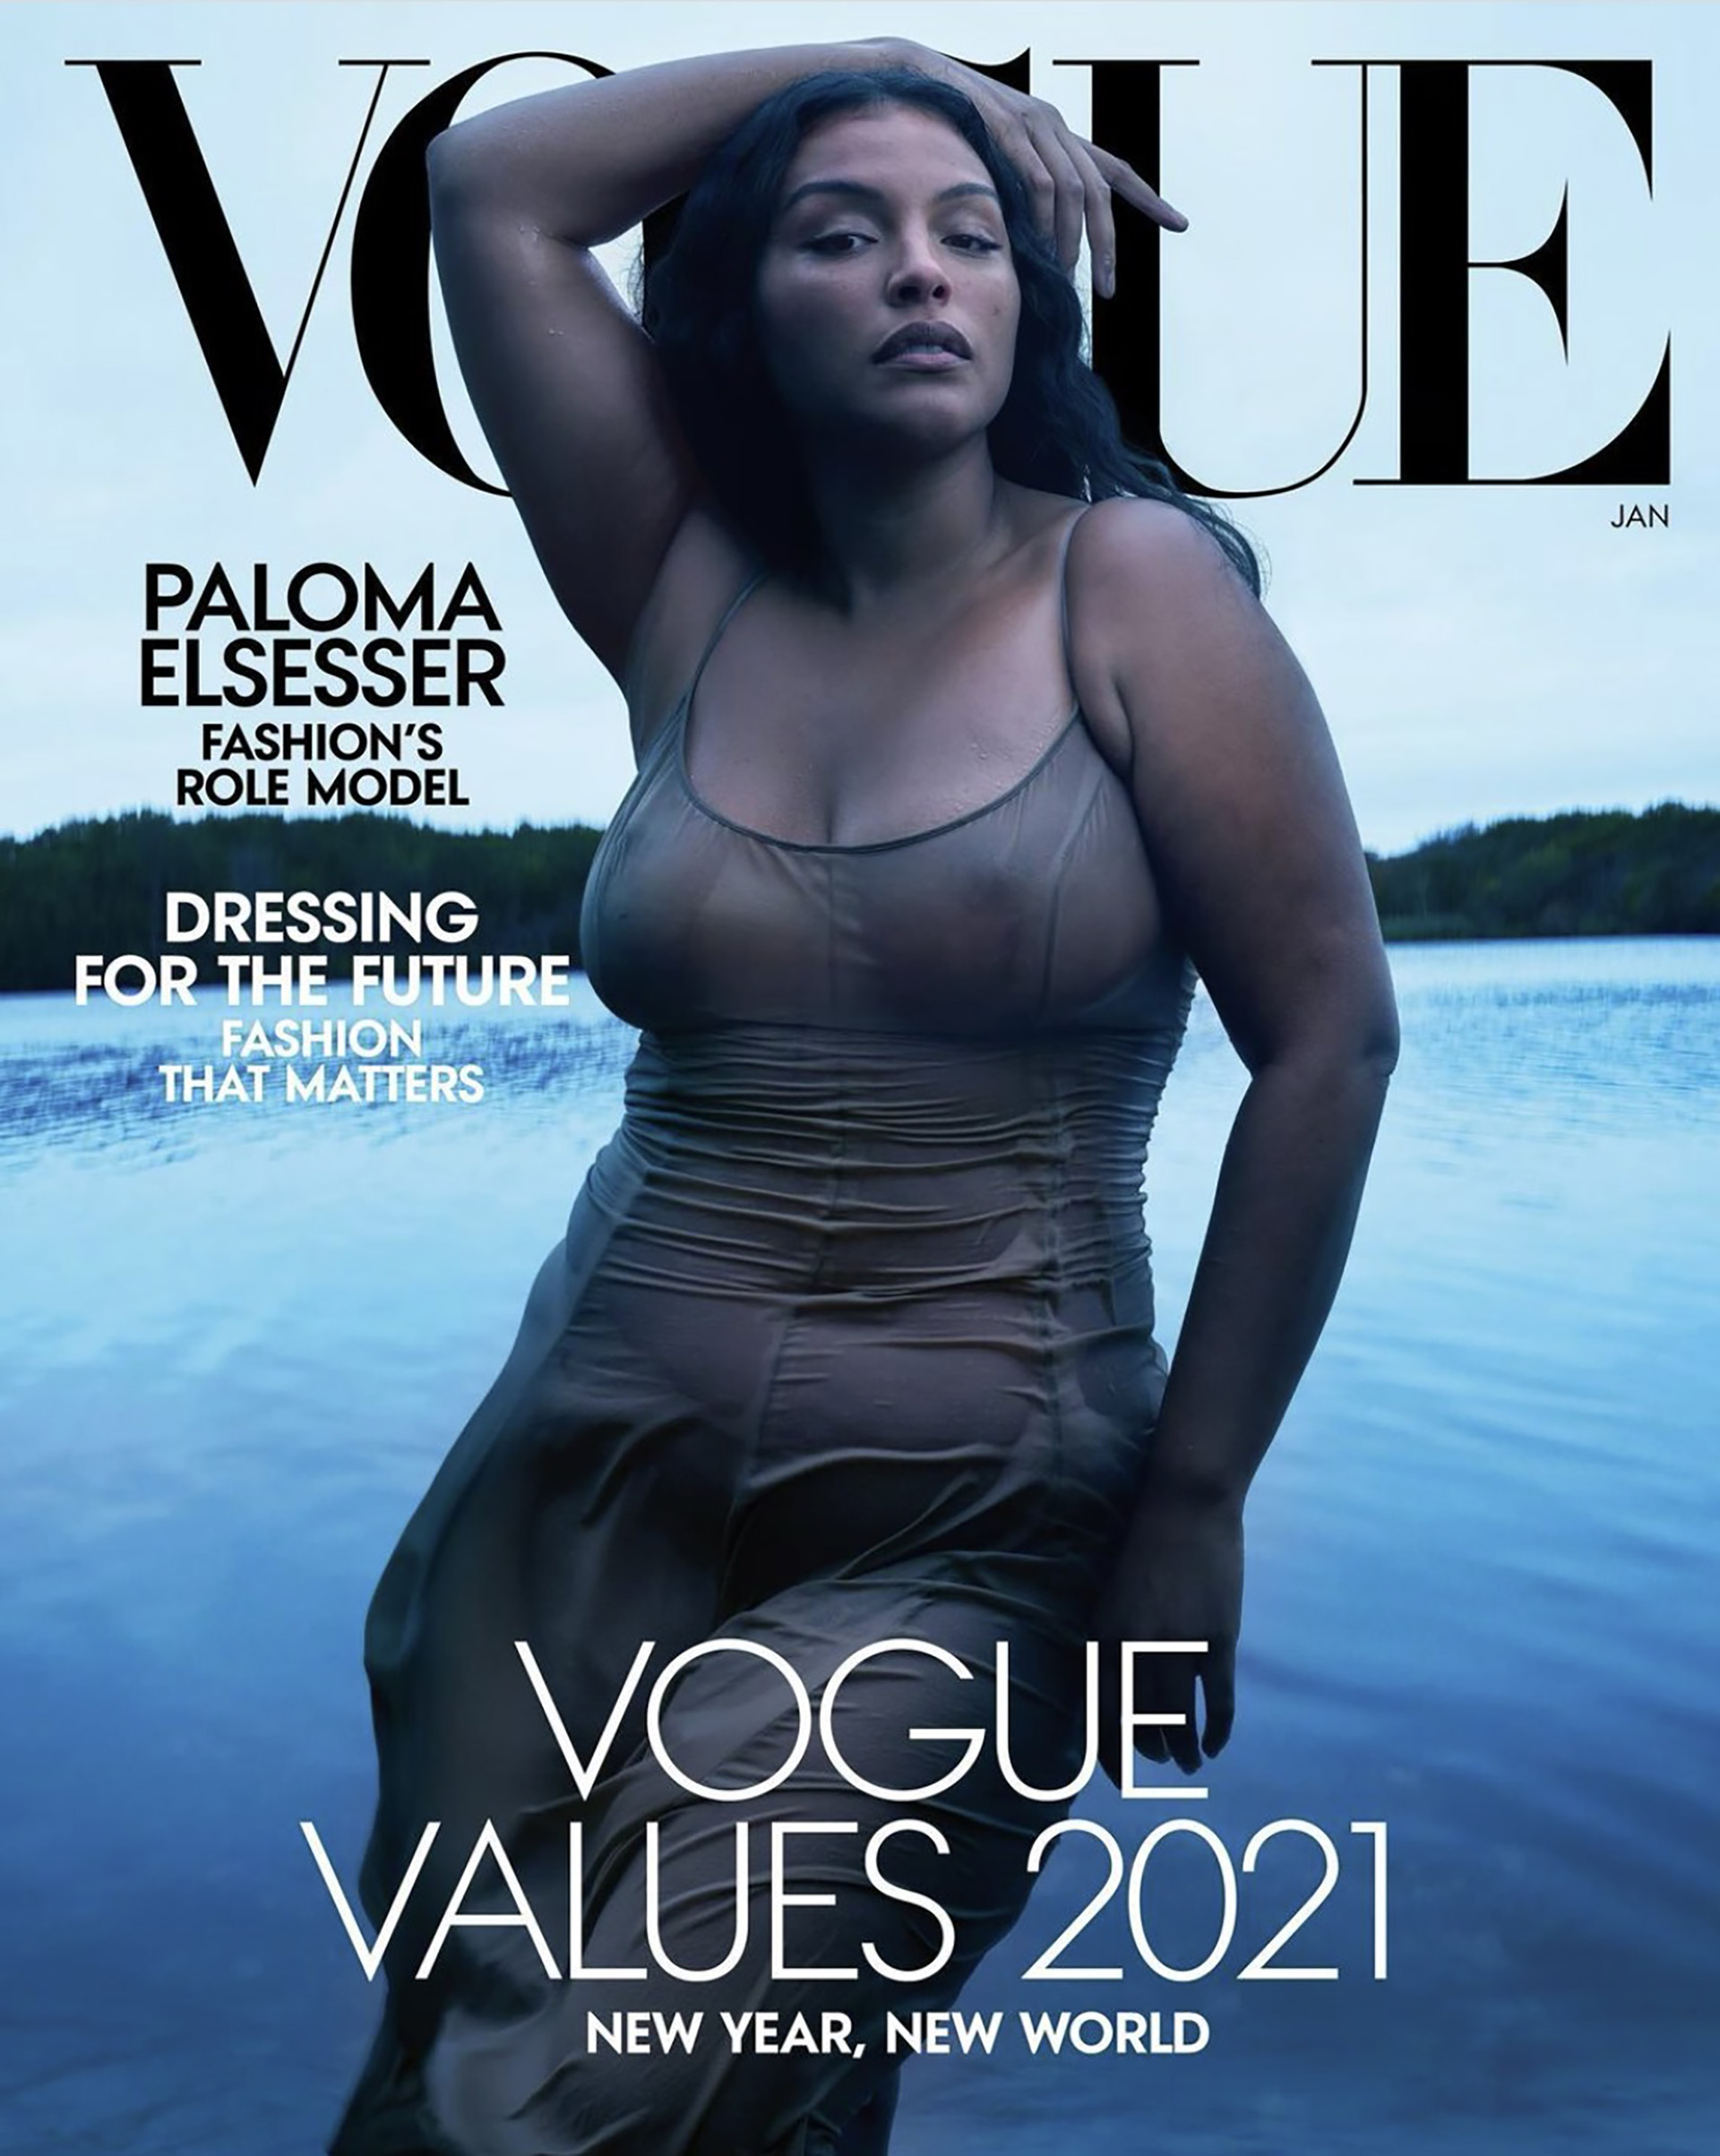 Paloma Elsesser, protagonizó la tapa de Vogue enero 2021 